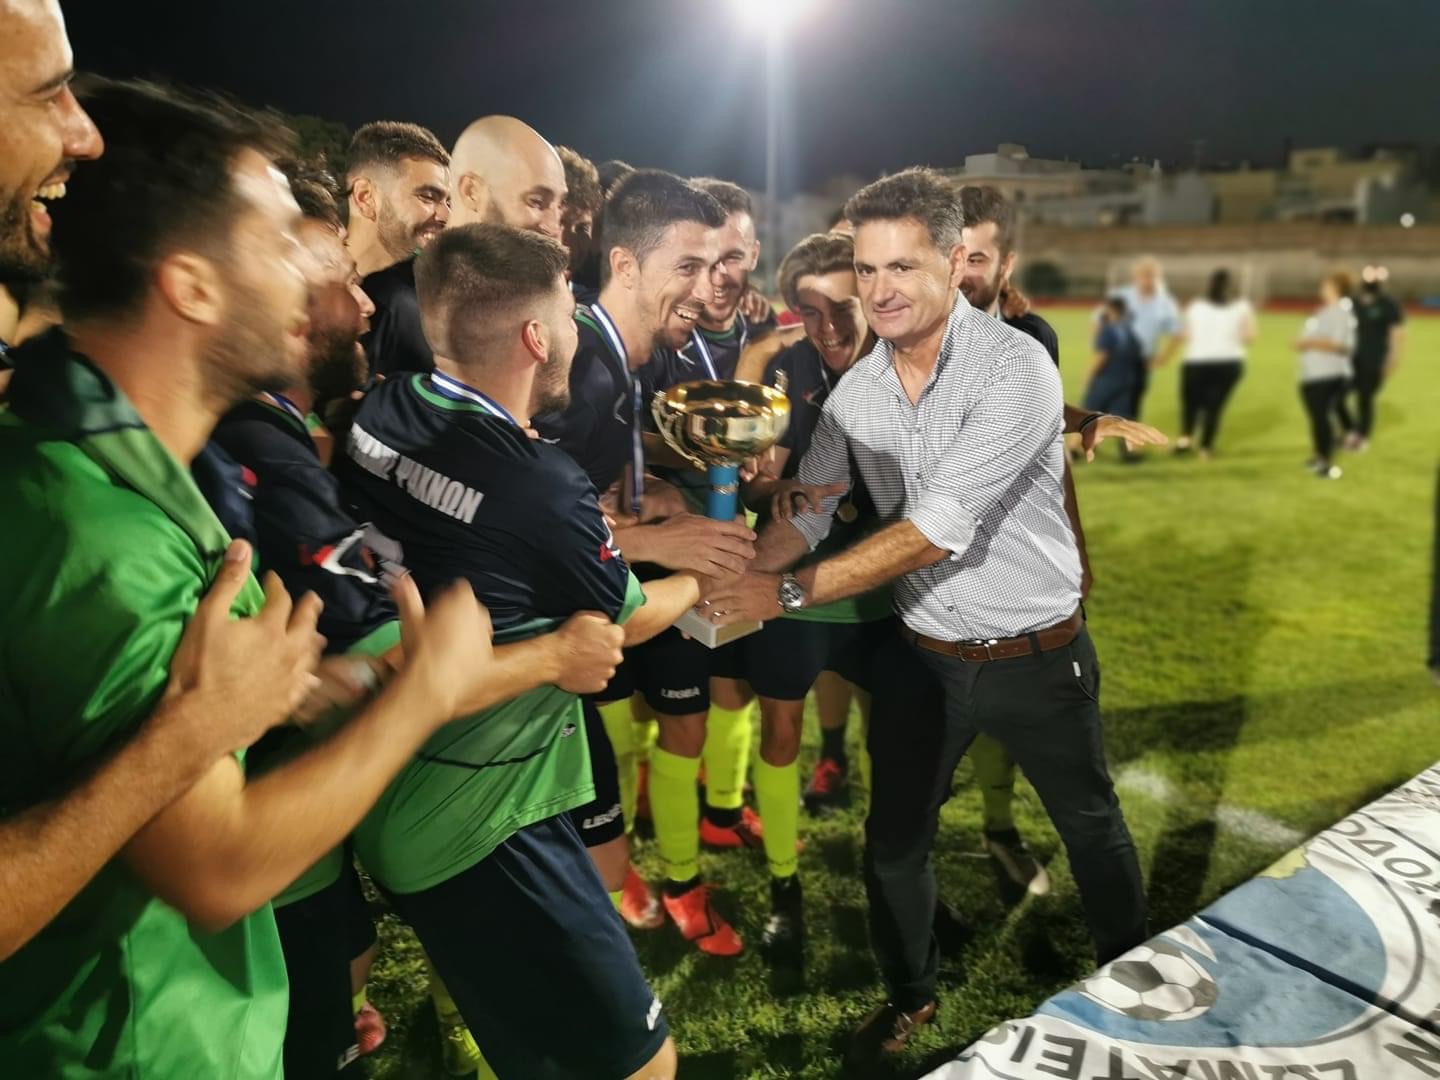 Ο Ηρακλής Ψαχνών επικράτησε με 6-1 του Ελλήσποντου και κατέκτησε το 5ο Super Cup Εύβοιας